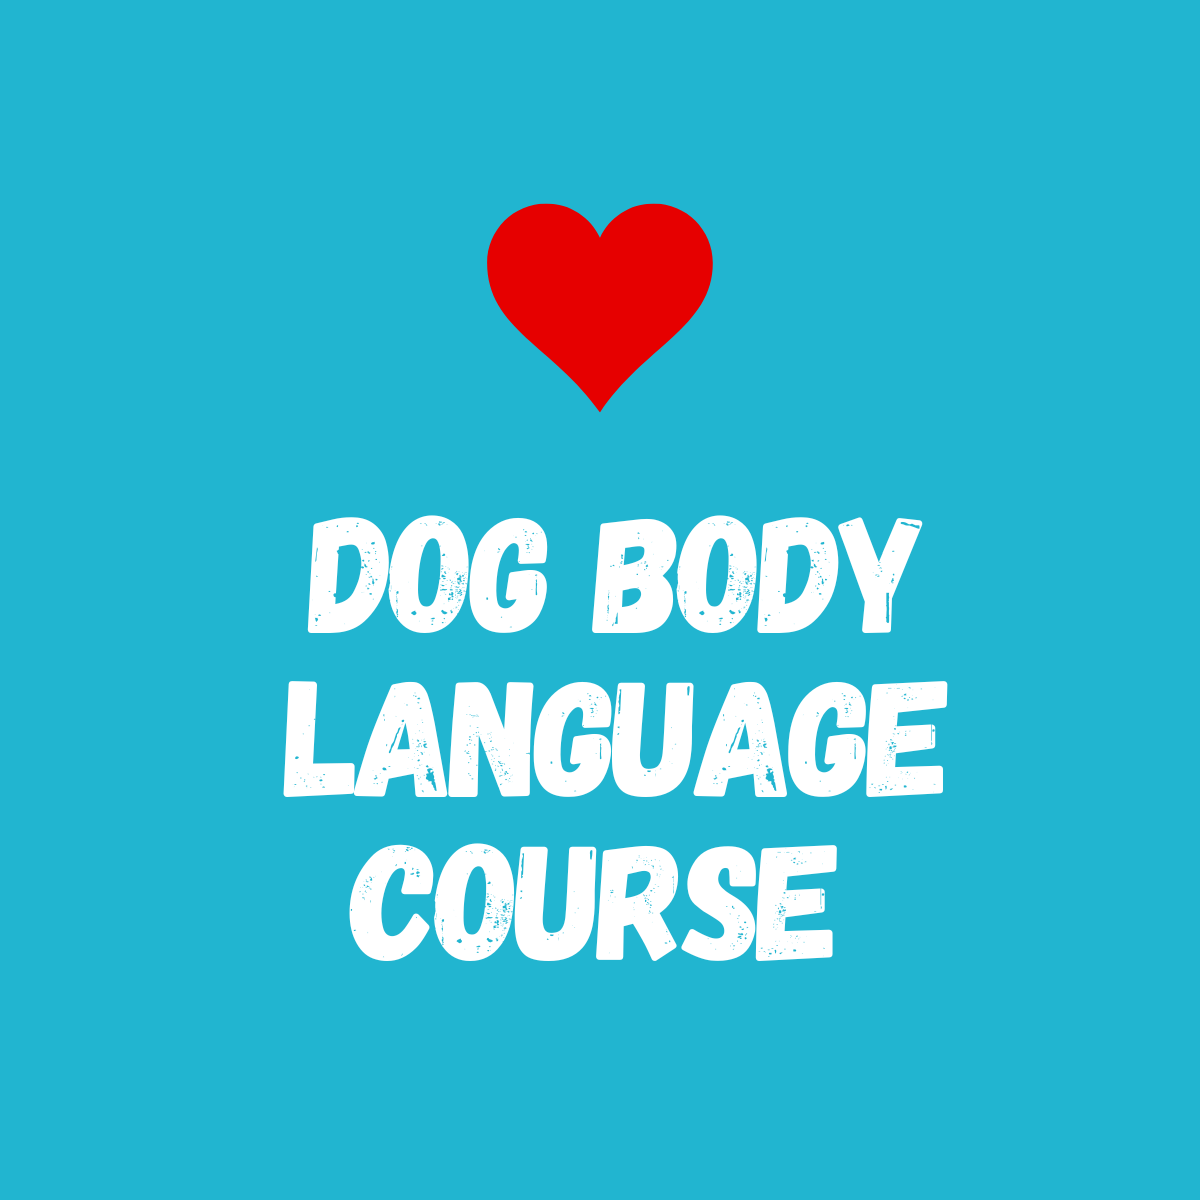 DOG BODY LANGUAGE